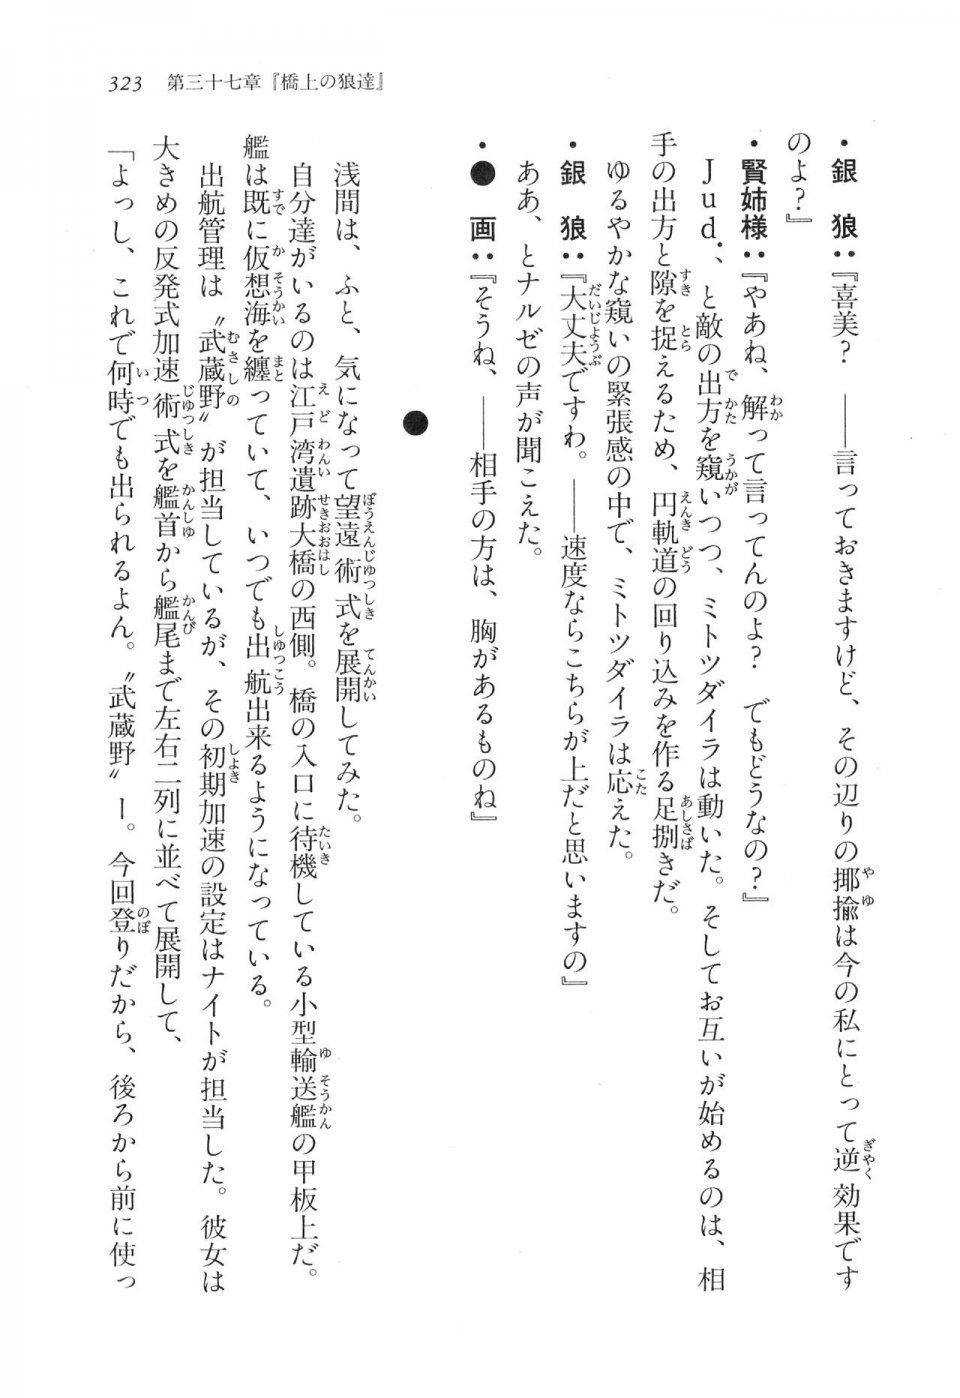 Kyoukai Senjou no Horizon LN Vol 17(7B) - Photo #323